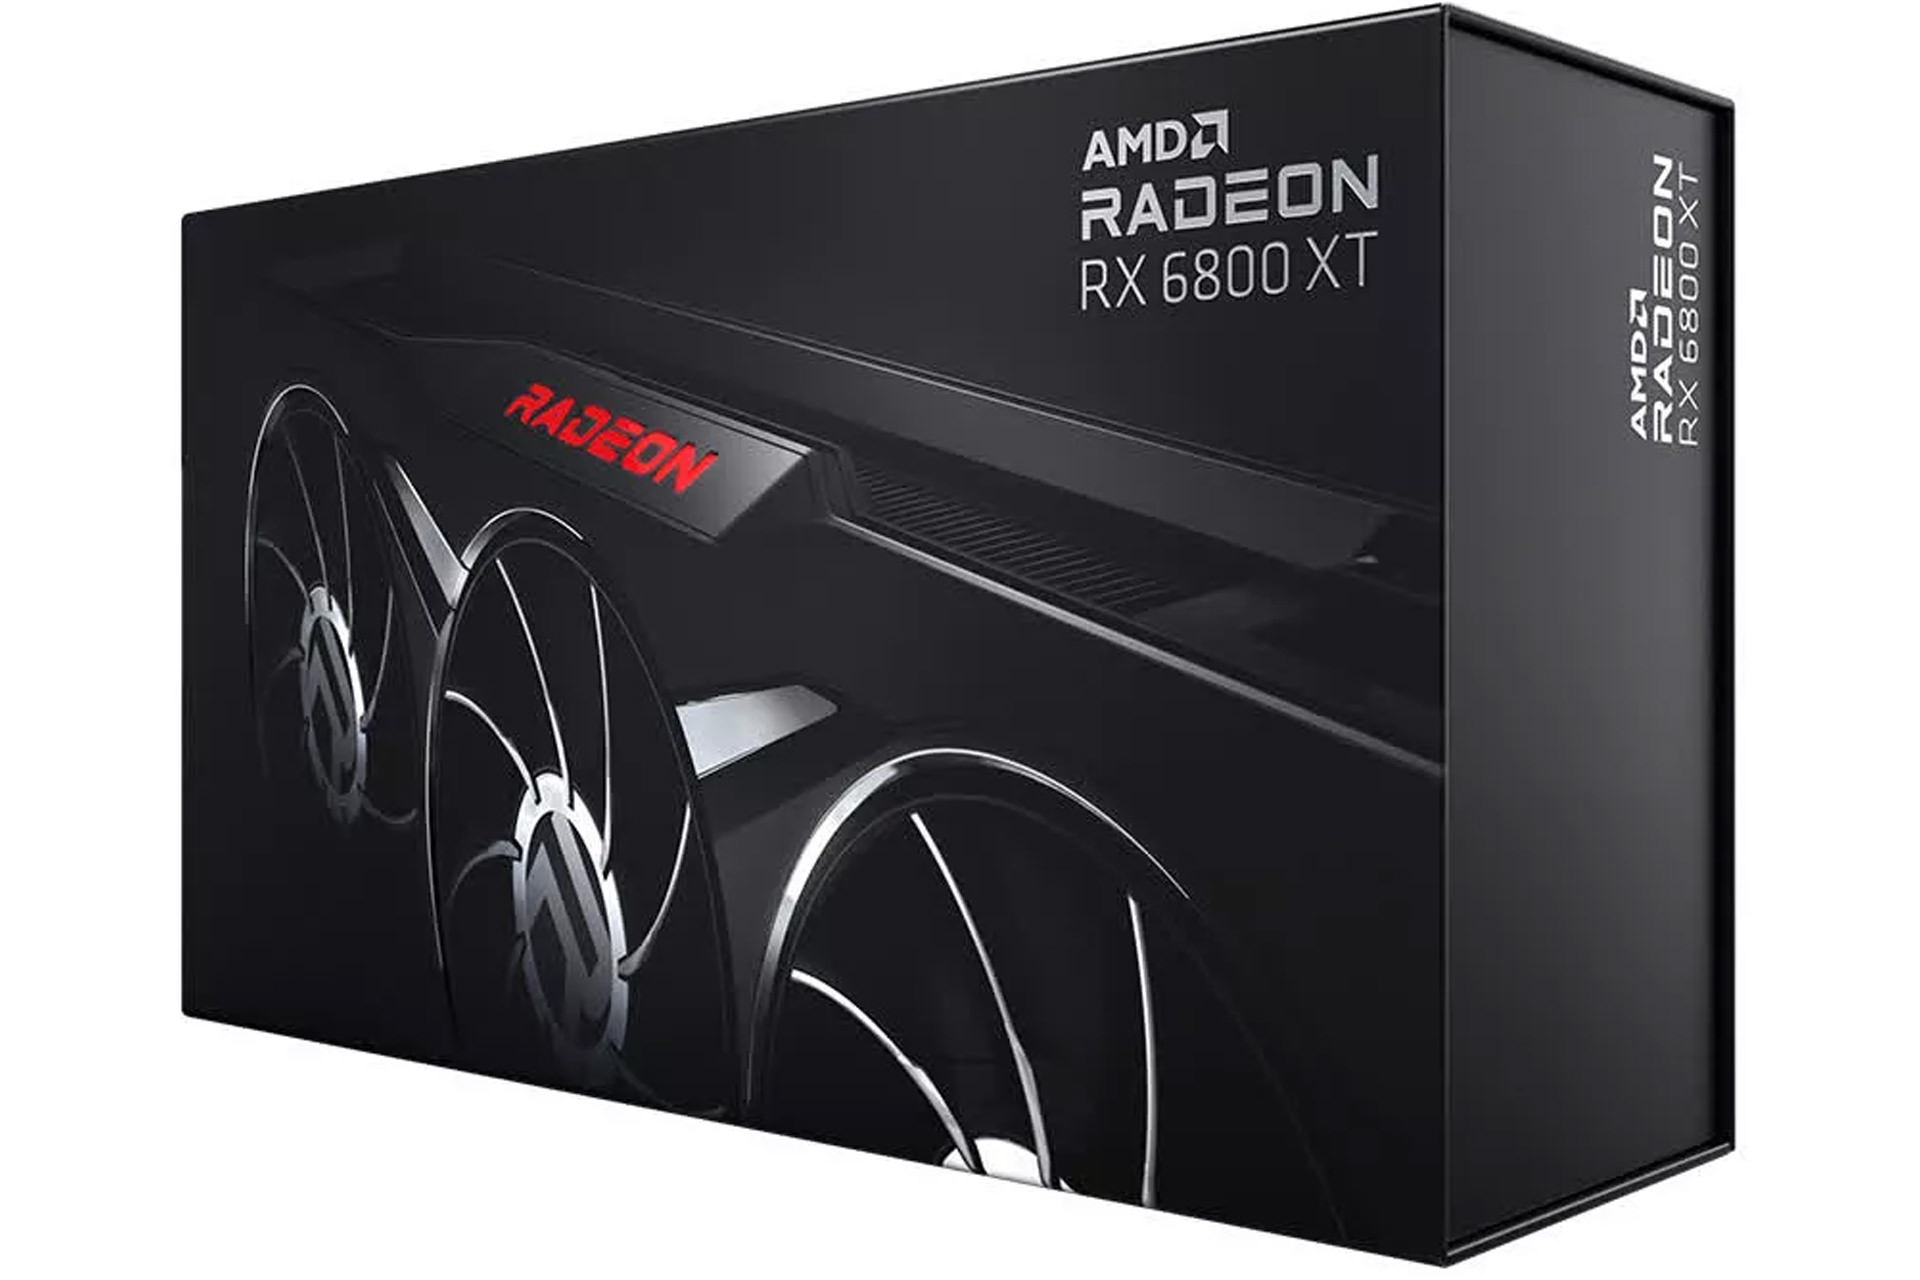 AMD مدل ویژه کارت گرافیک RX 6800 XT را